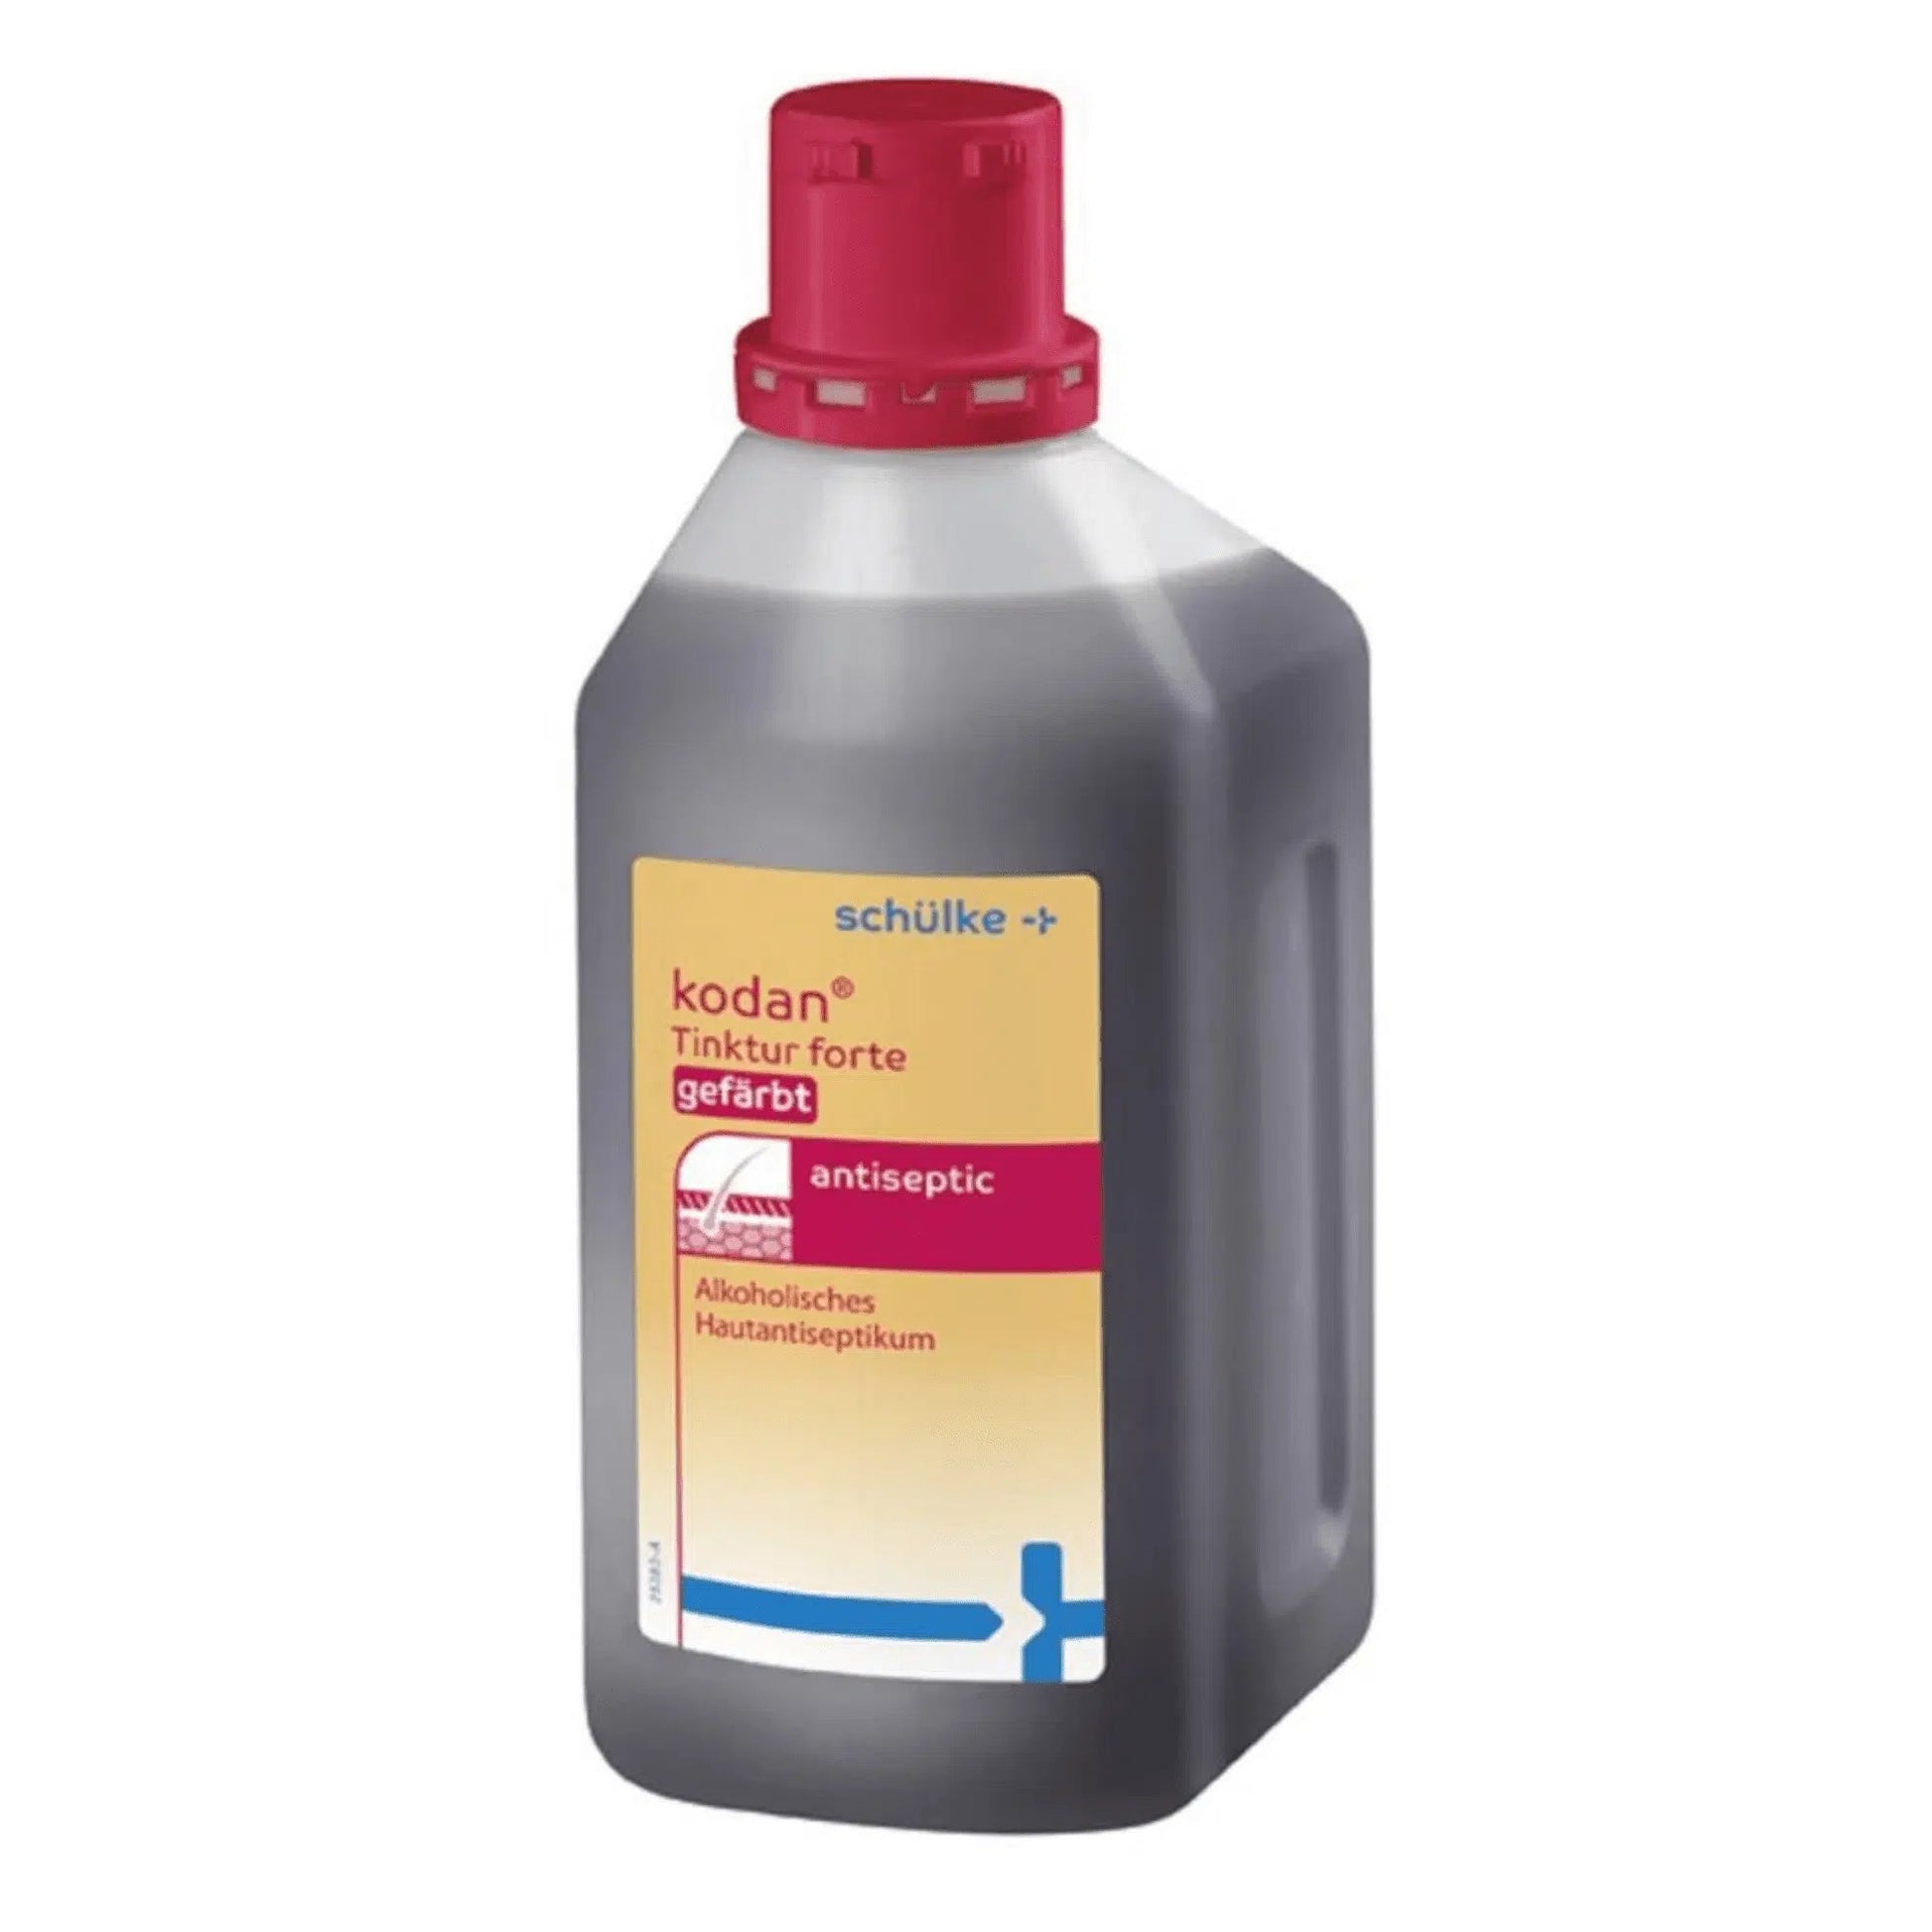 Eine Plastikflasche Schülke kodan® Tinktur forte Hautantiseptikum gefärbt der Schülke & Mayr GmbH mit rotem Verschluss, gekennzeichnet als hautantiseptisches Mittel mit alkoholbasierten Eigenschaften.